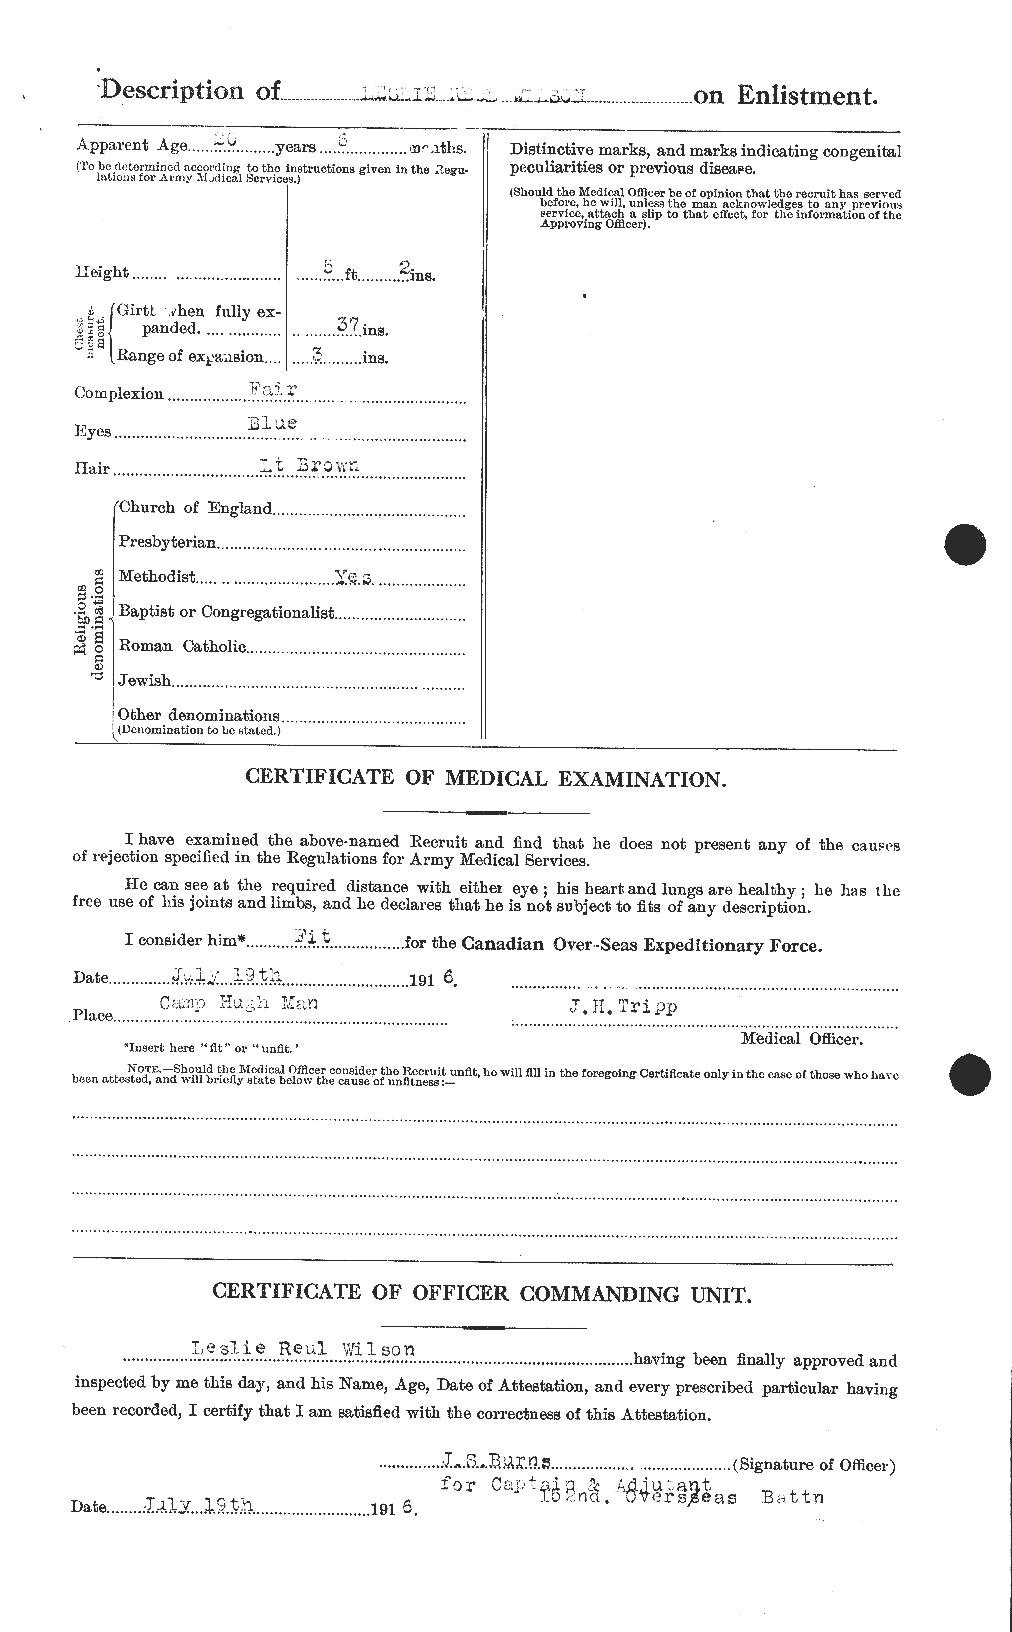 Dossiers du Personnel de la Première Guerre mondiale - CEC 678650b